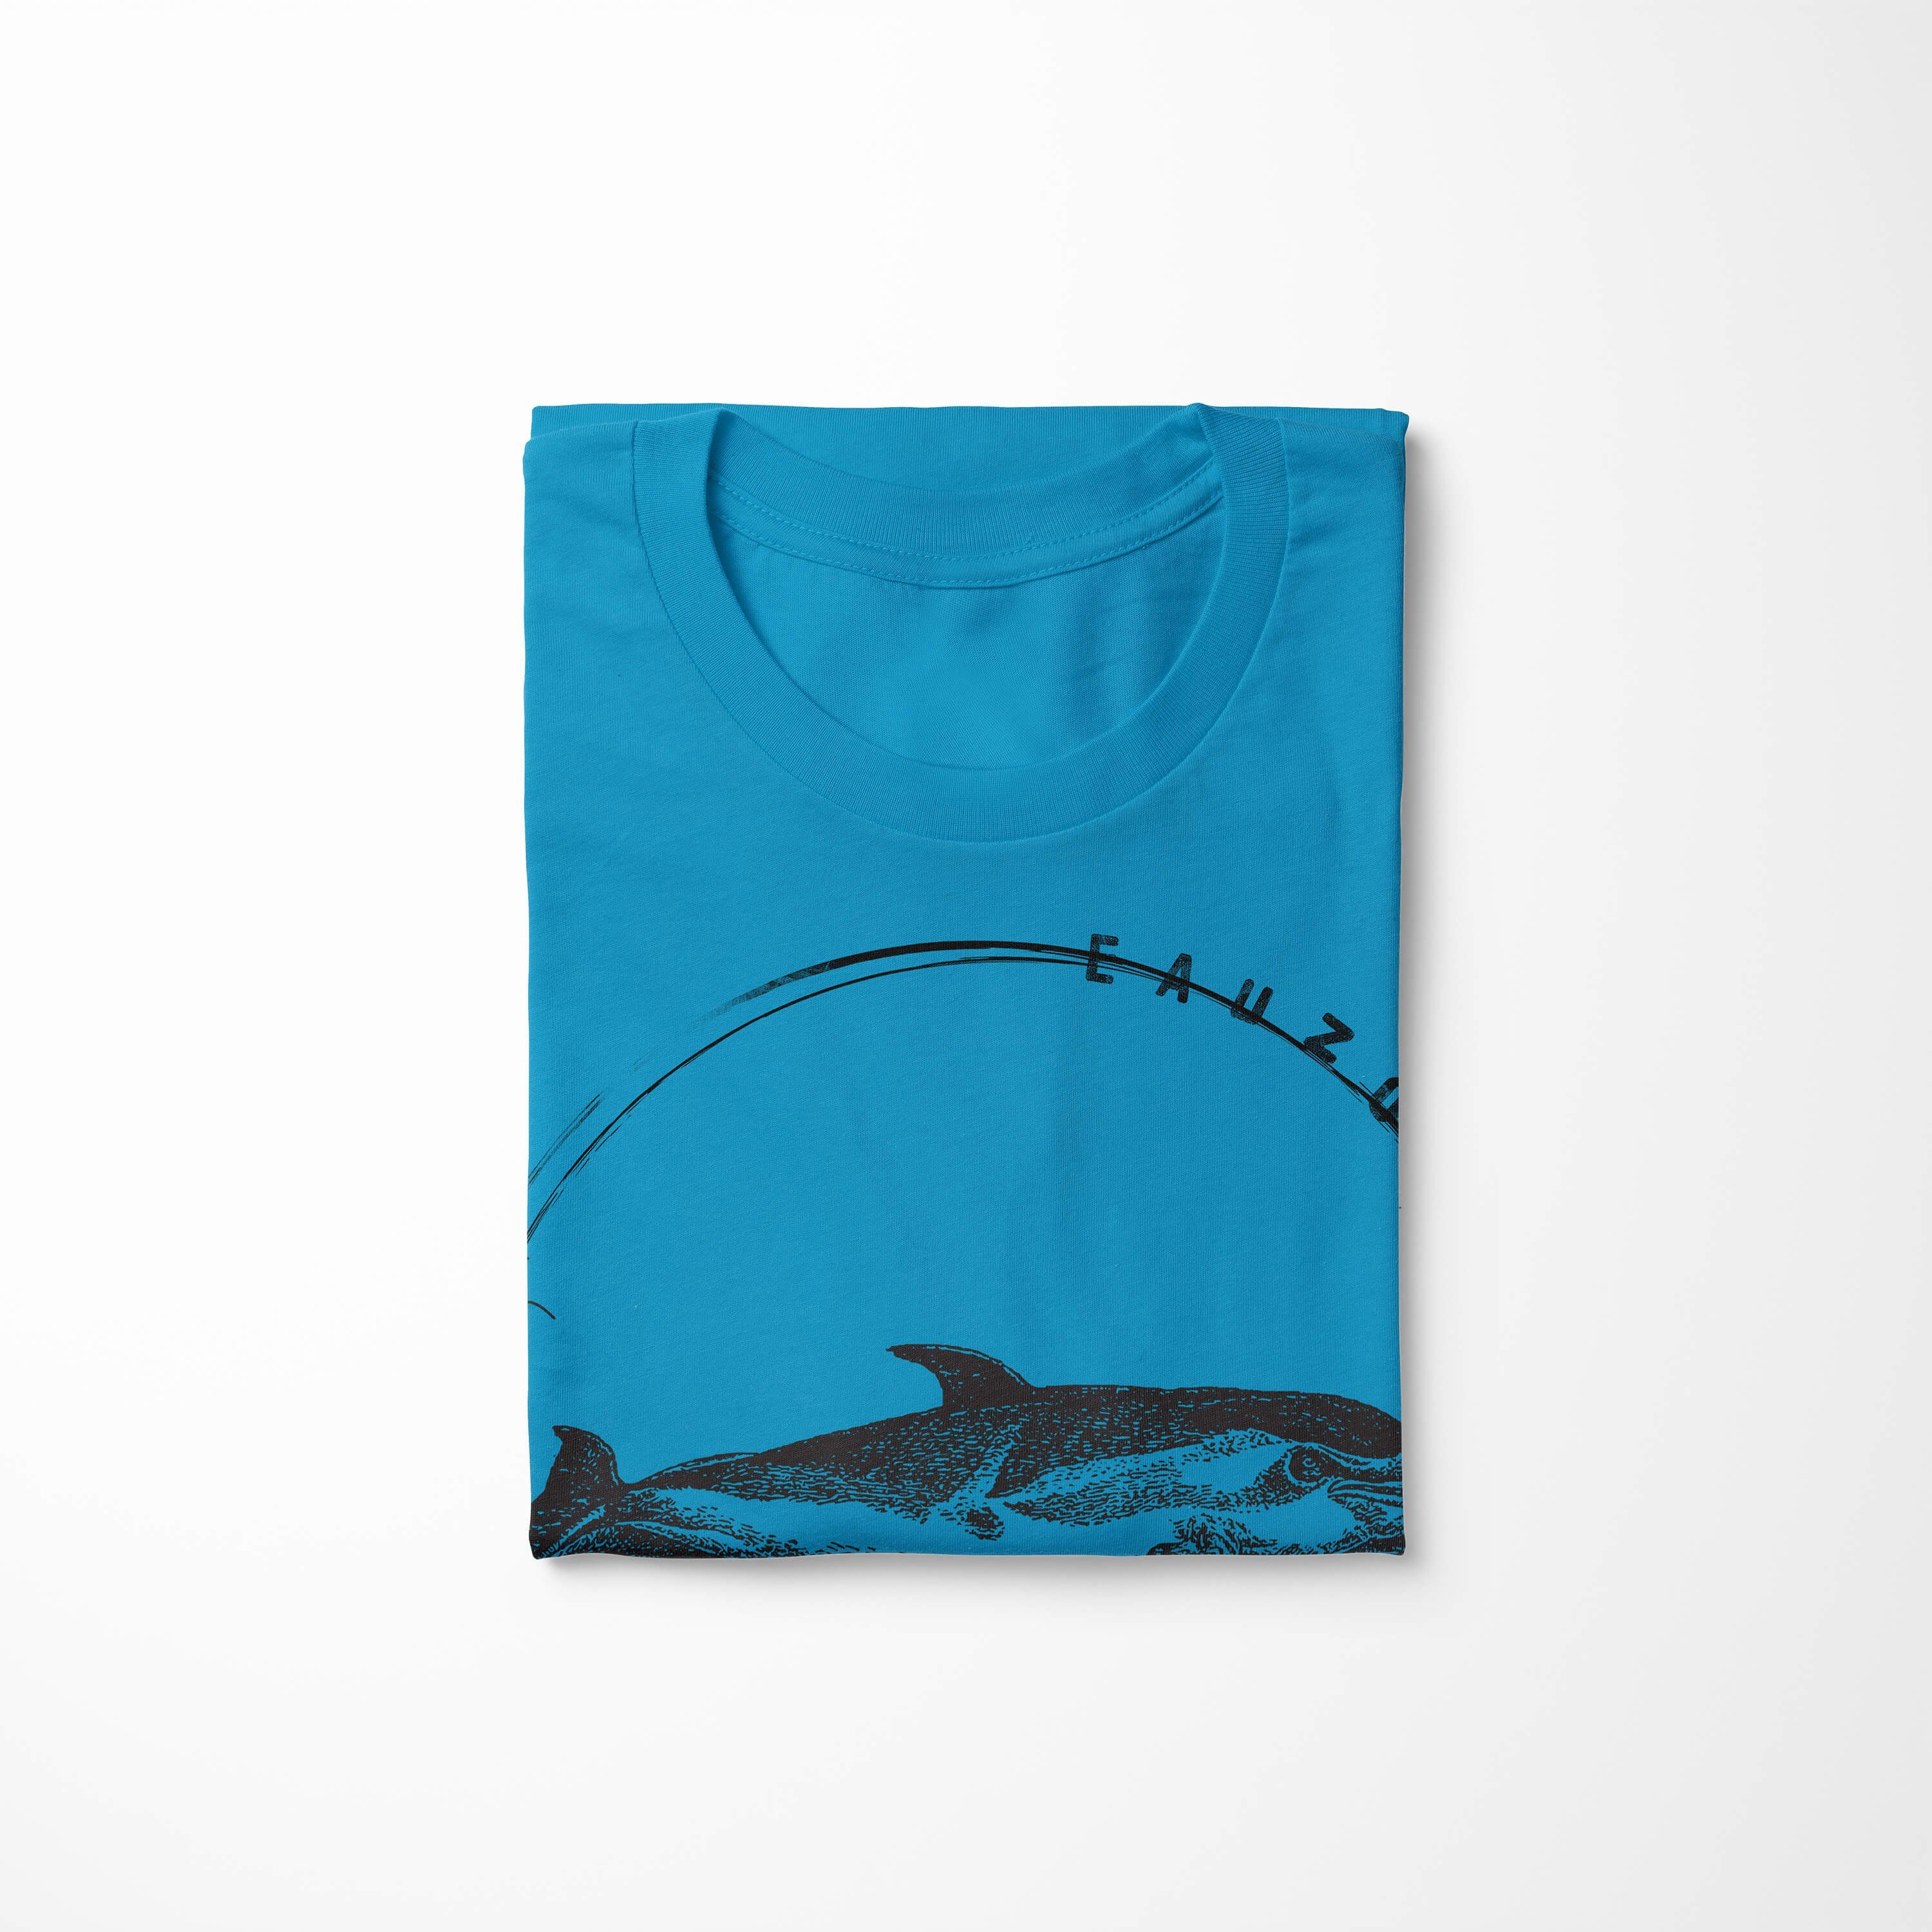 T-Shirt Sinus T-Shirt Delfin Art Atoll Evolution Herren